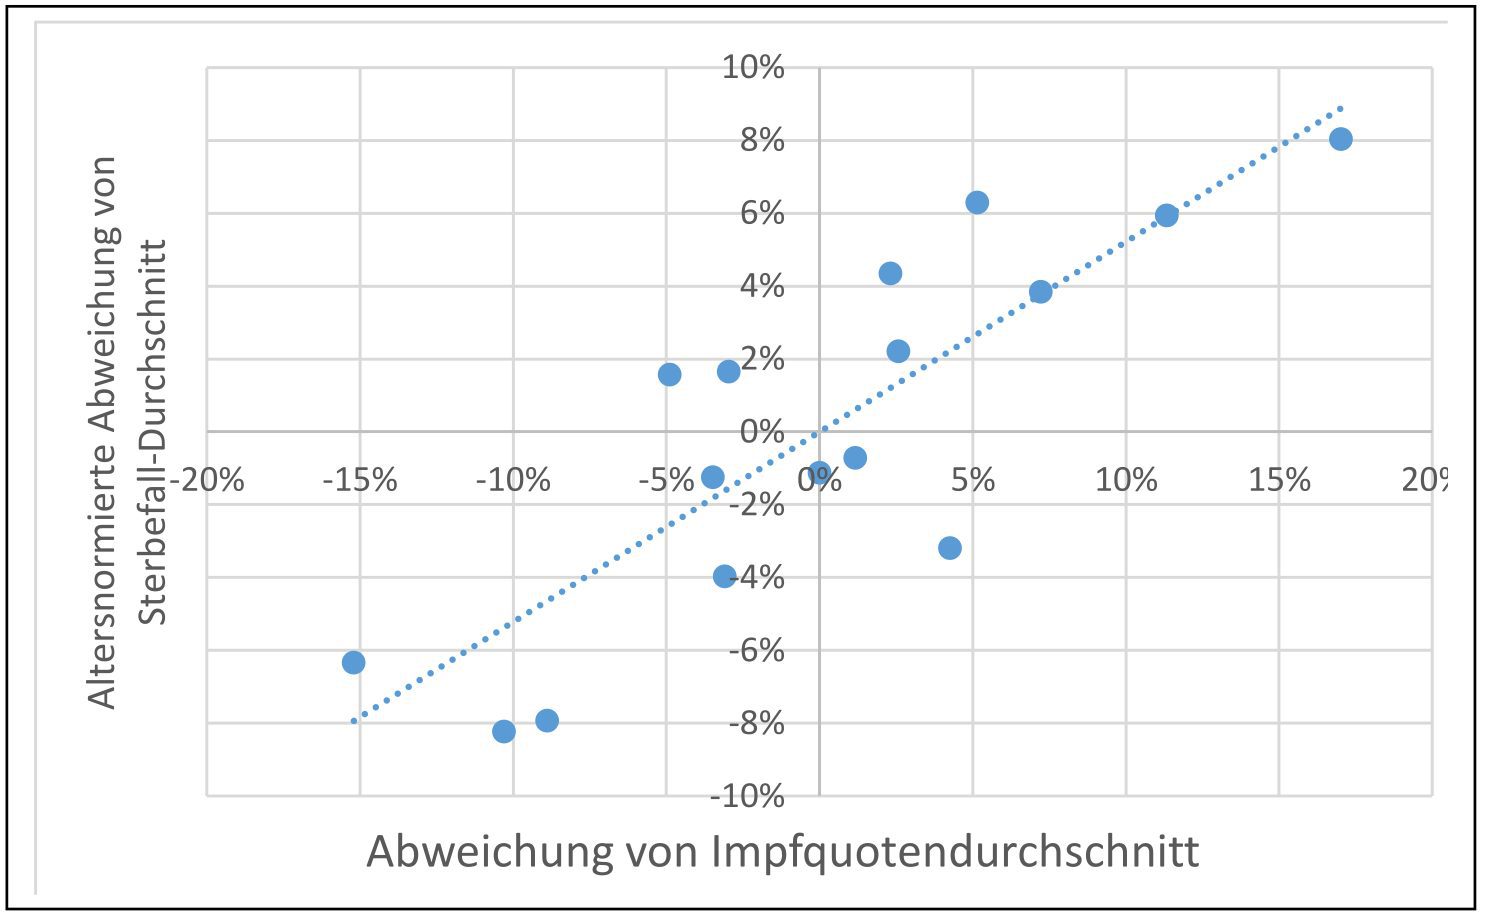 gesamtsterbefallzahl-korreliert-hochsignifikant-positiv-mit-impfquote-beim-vergleich-aller-deutscher-bundeslaender